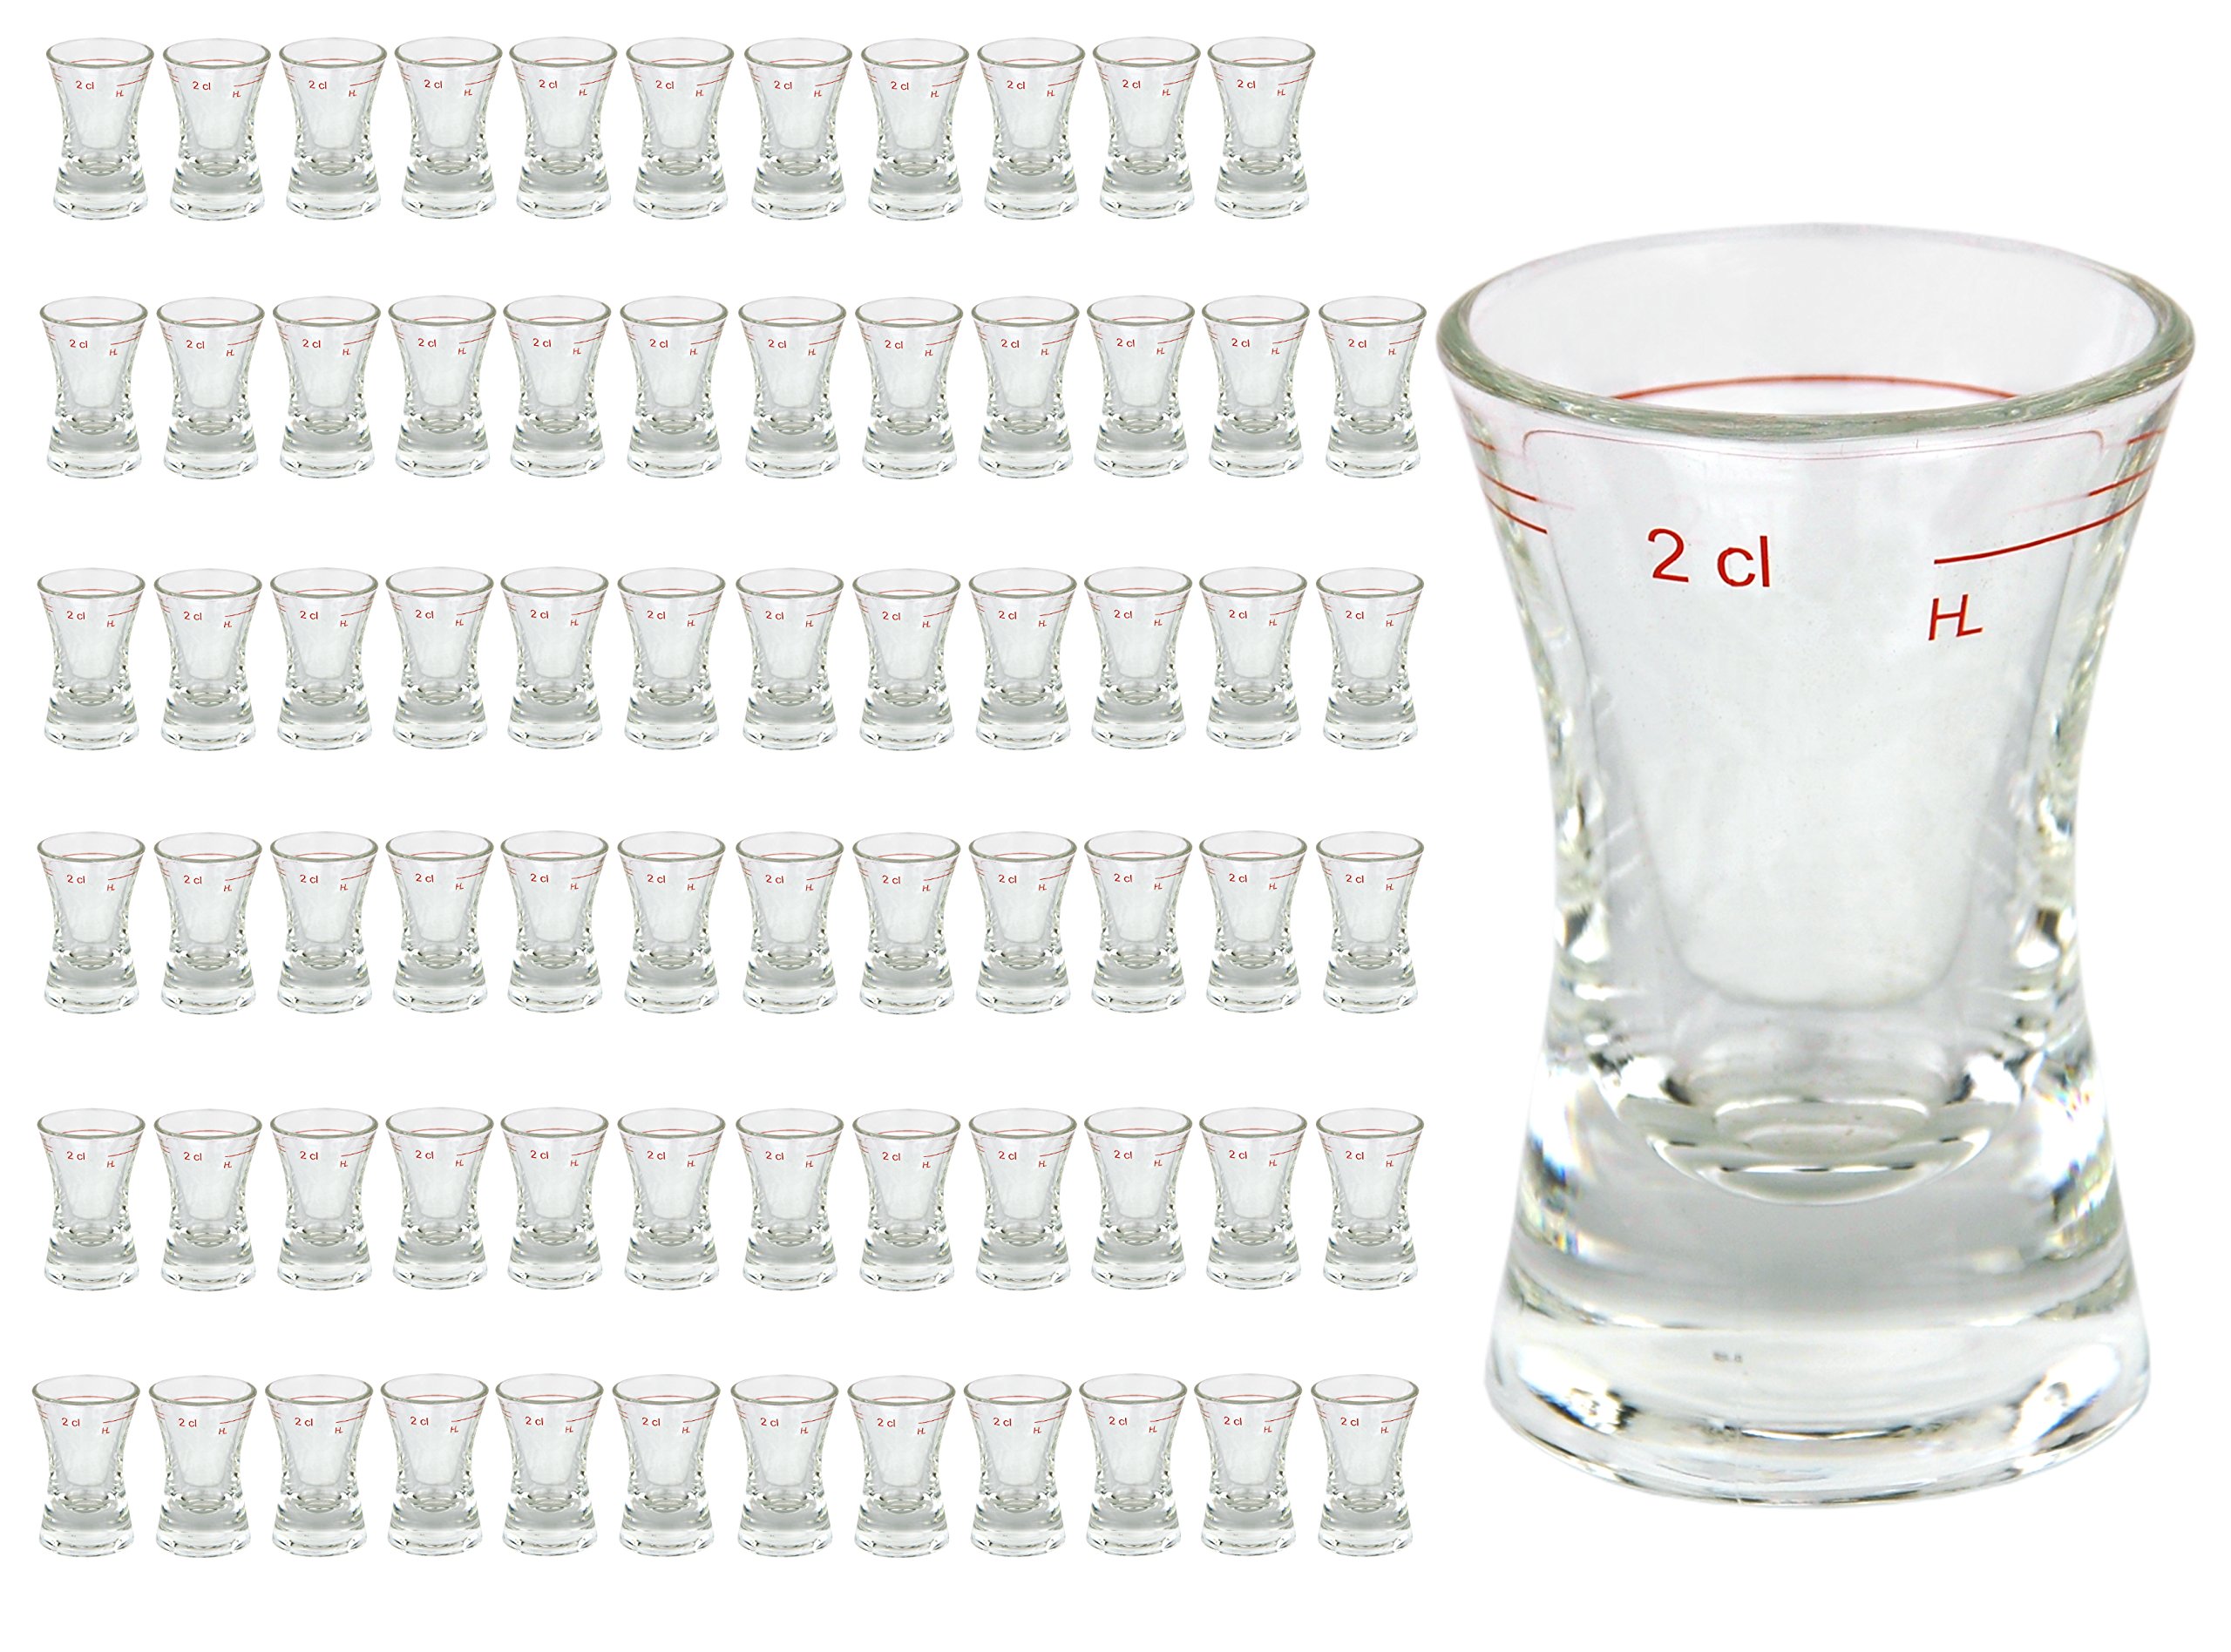 72er Set Schnapsglas WACHTMEISTER mit Eichstrich, 2 cl, geeicht, konkaves Spirituosenglas mit Füllstrich, Stamper, Shot Glas, hochglänzendes Markenglas, glasklar